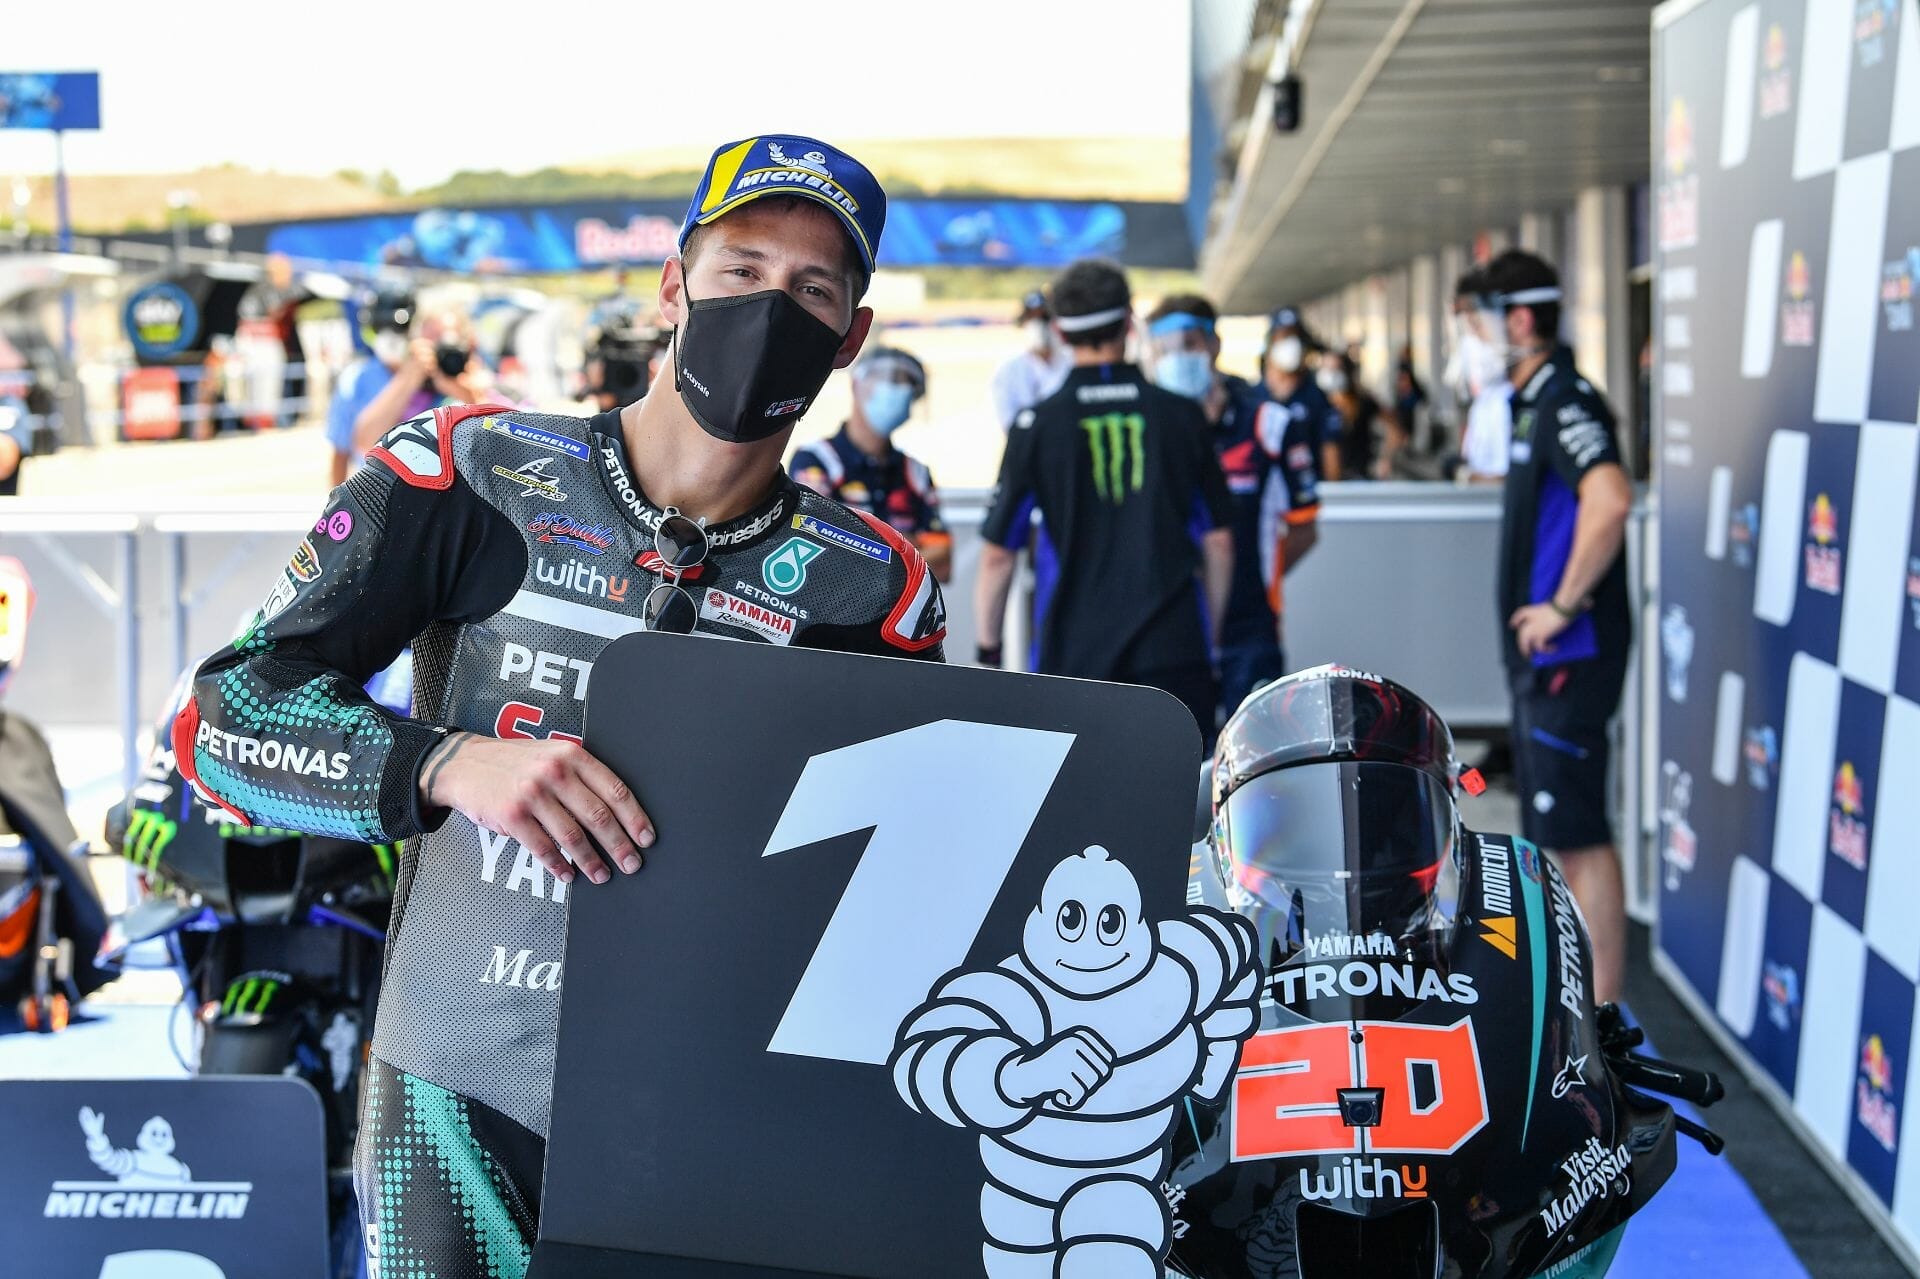 MotoGP meldet sich mit furiosem Rennen zurück
- auch in der MOTORRAD NACHRICHTEN APP